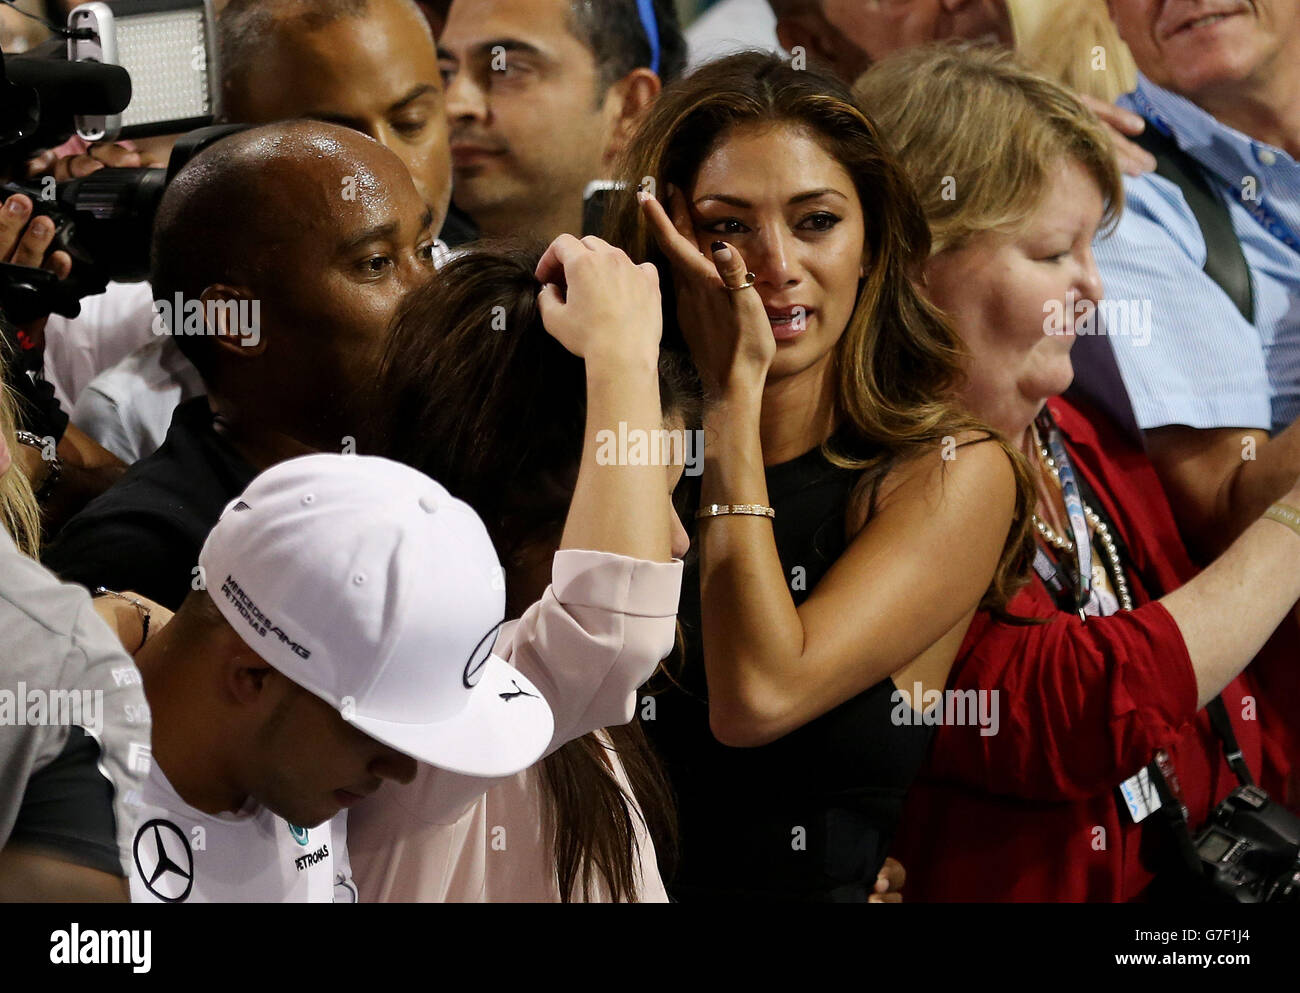 Nicole Scherzinger si strappa dopo che Lewis Hamilton diventa campione del mondo dopo la vittoria nel Gran Premio di Abu Dhabi 2014 al circuito di Yas Marina, Abu Dhabi, Emirati Arabi Uniti. Foto Stock